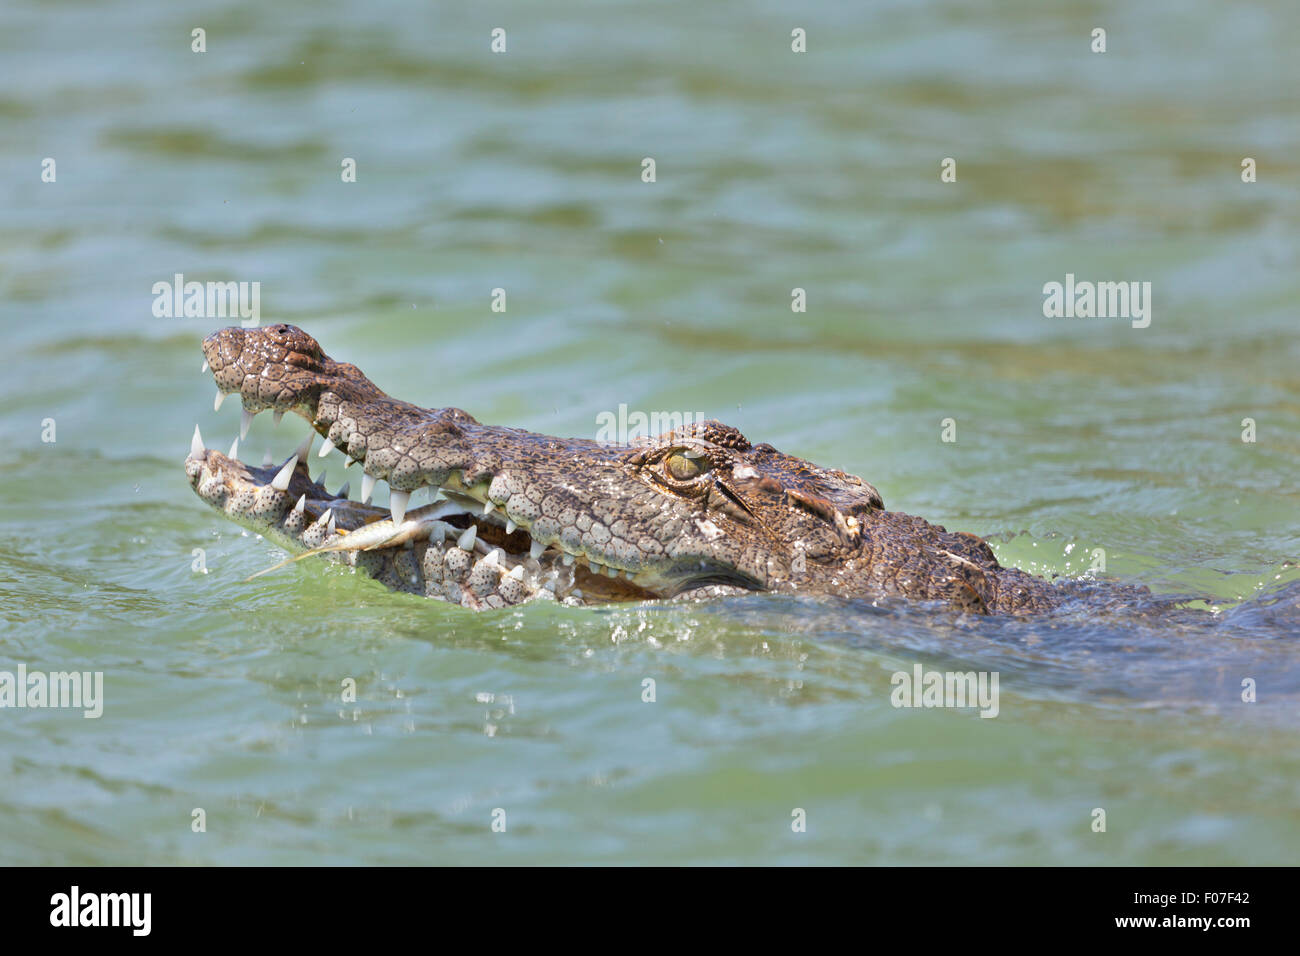 A partly tame freshwater crocodile eating a fish at Lake Baringo, Kenya showing its head. Stock Photo